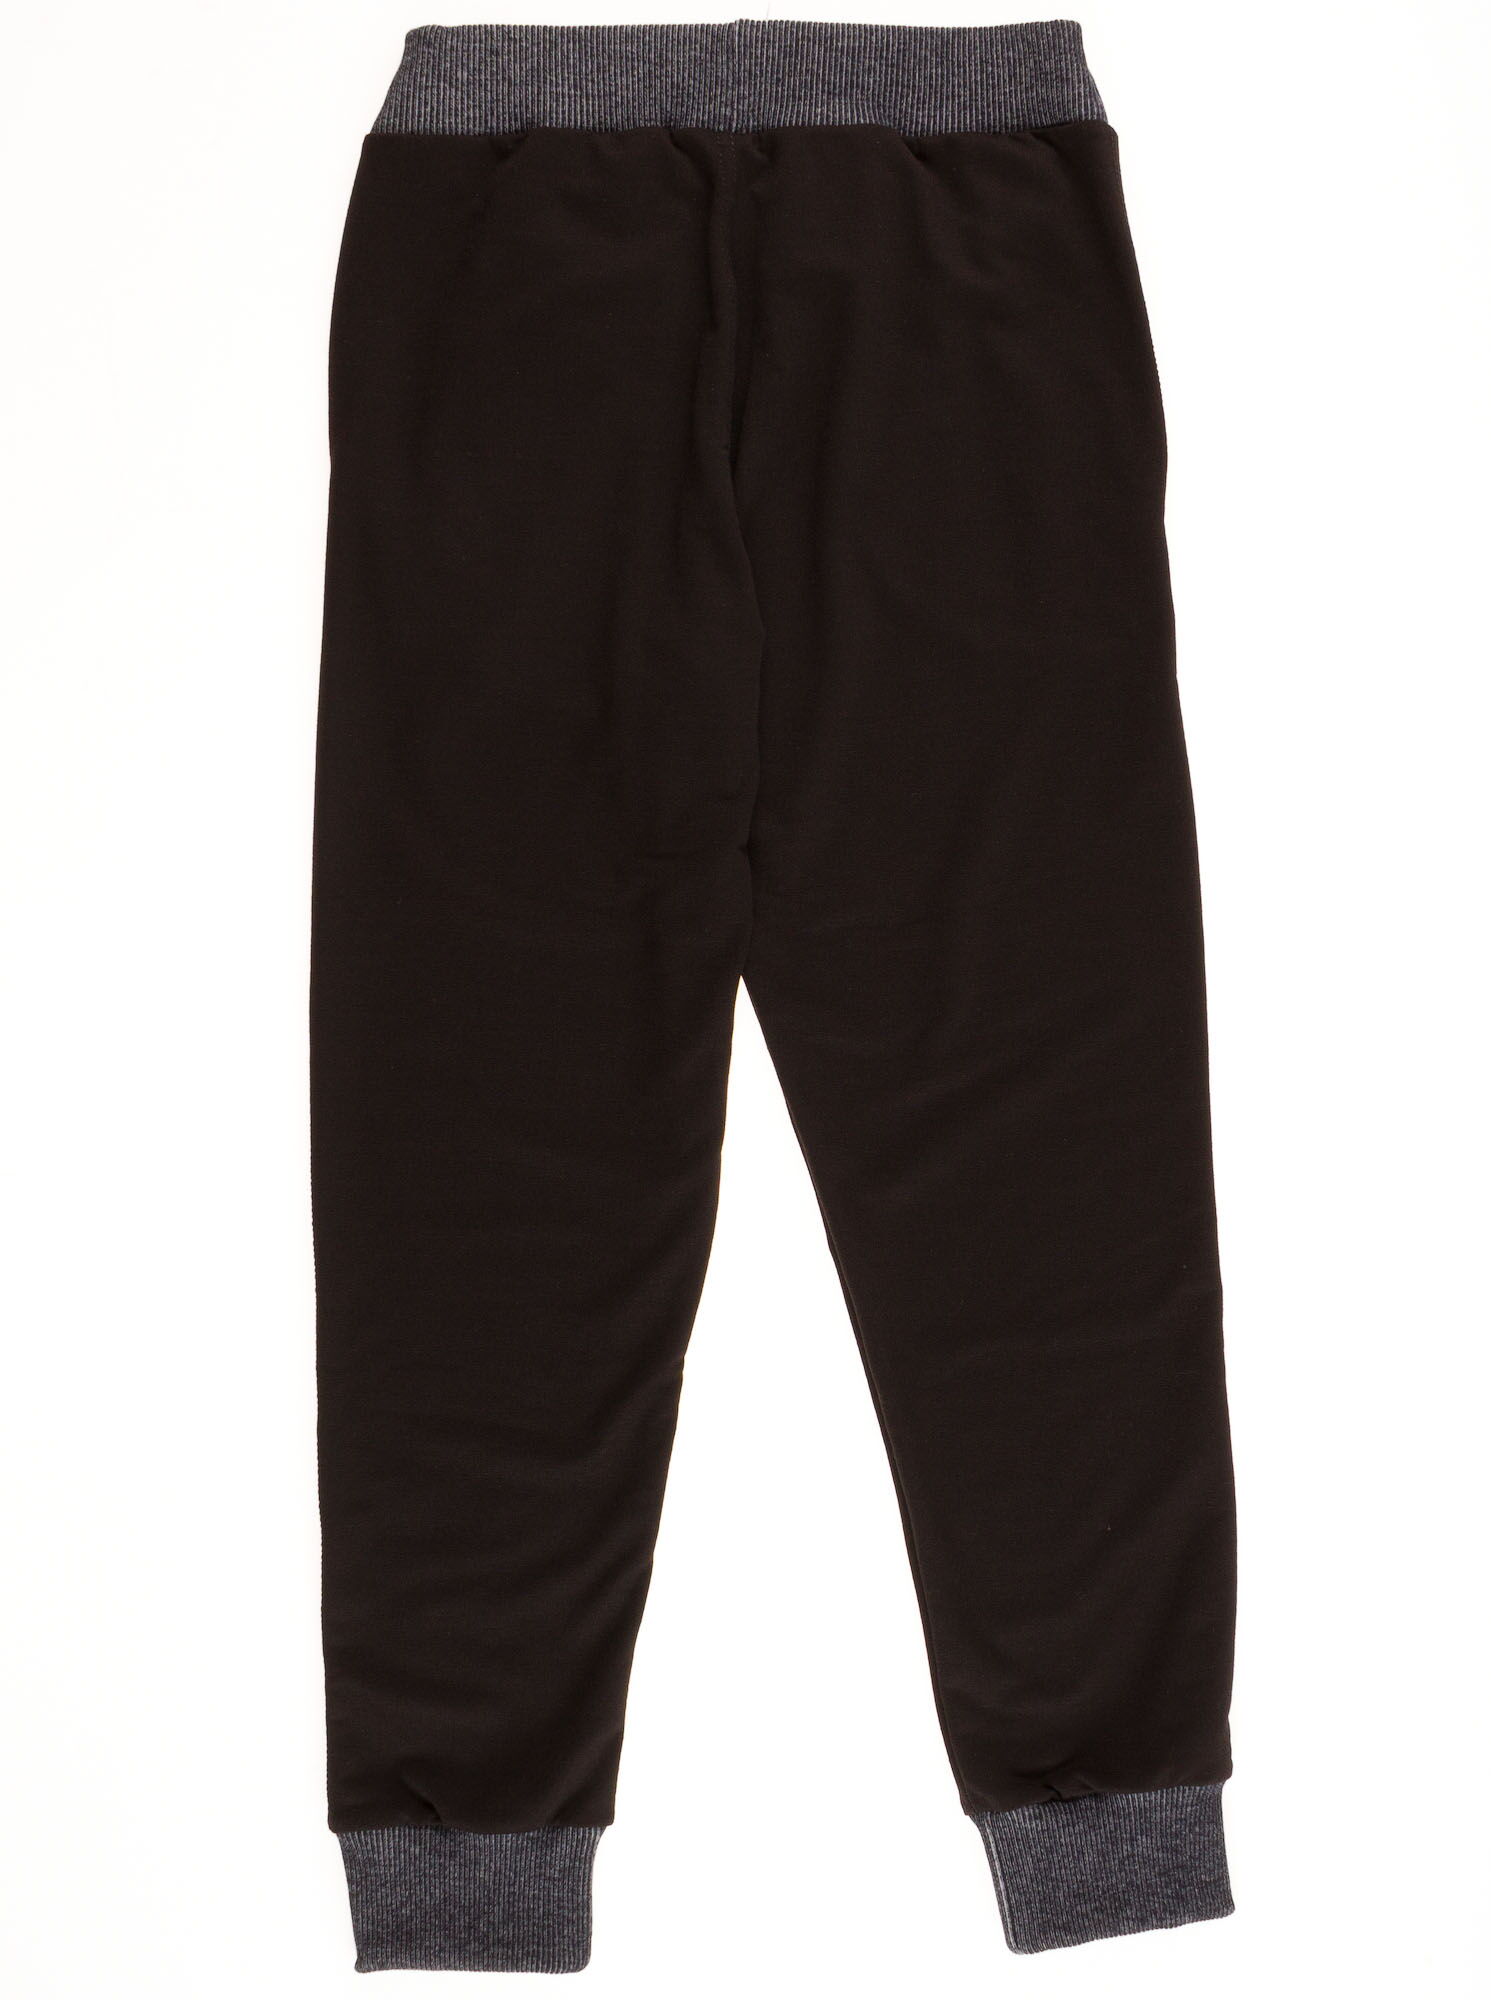 Спортивные штаны для мальчика  Mevis черные to 30-01 - размеры